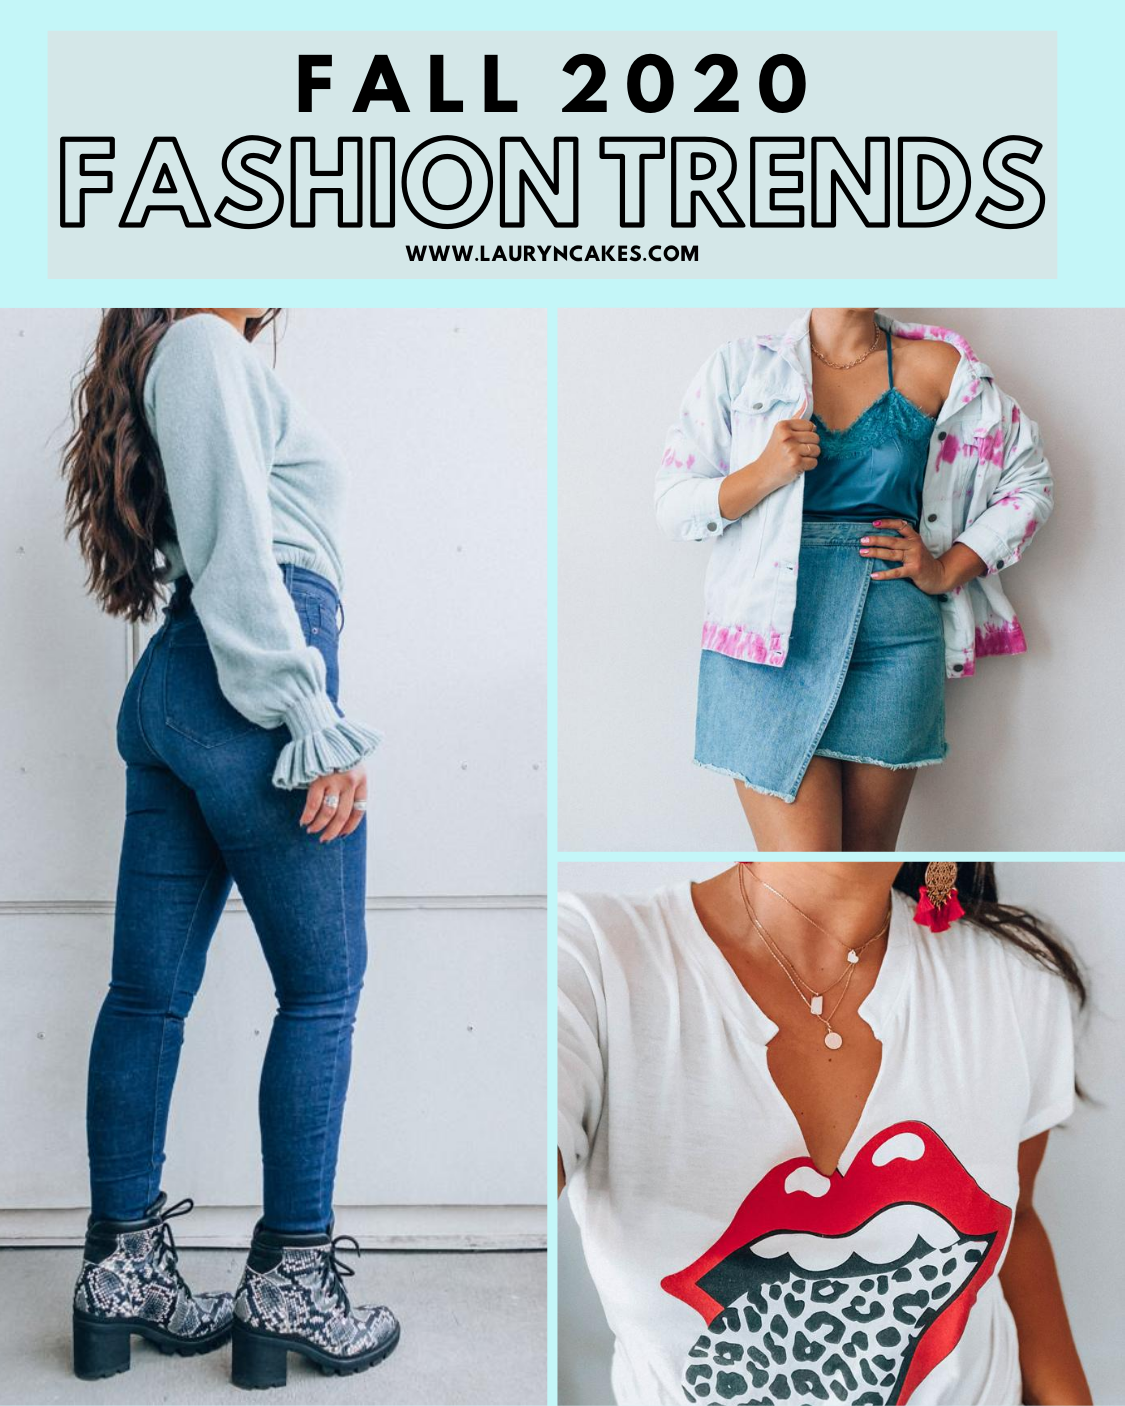 Fashion Trends Fall 2020 | Lauryncakes.com